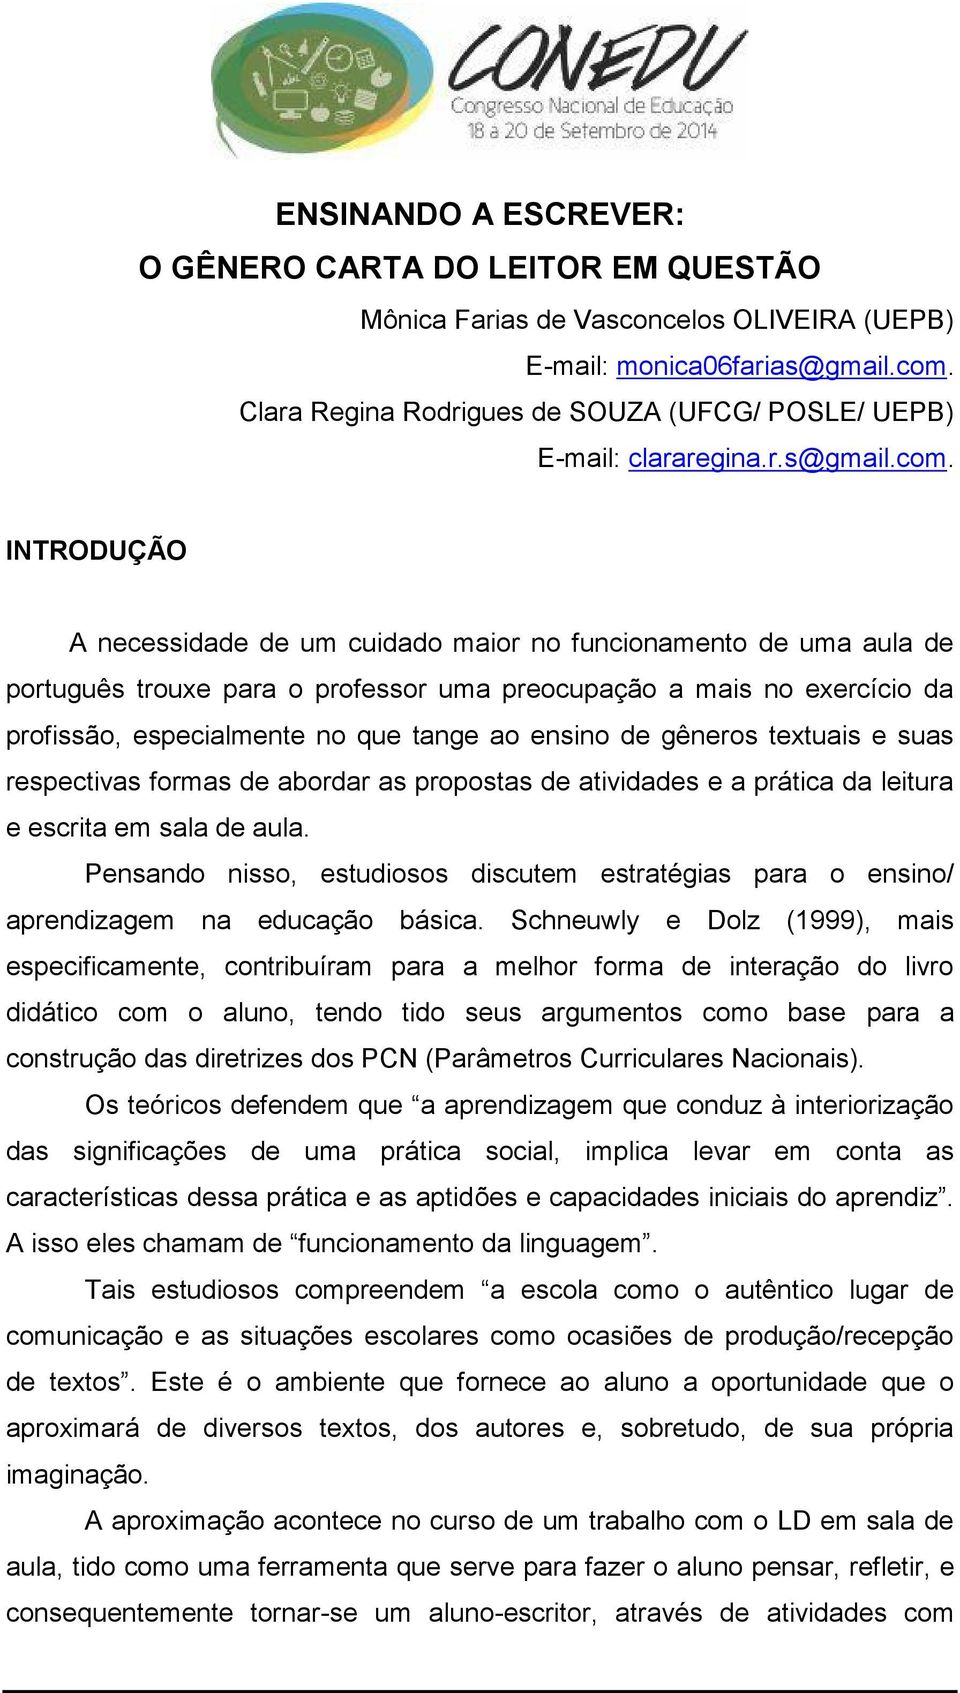 INTRODUÇÃO A necessidade de um cuidado maior no funcionamento de uma aula de português trouxe para o professor uma preocupação a mais no exercício da profissão, especialmente no que tange ao ensino